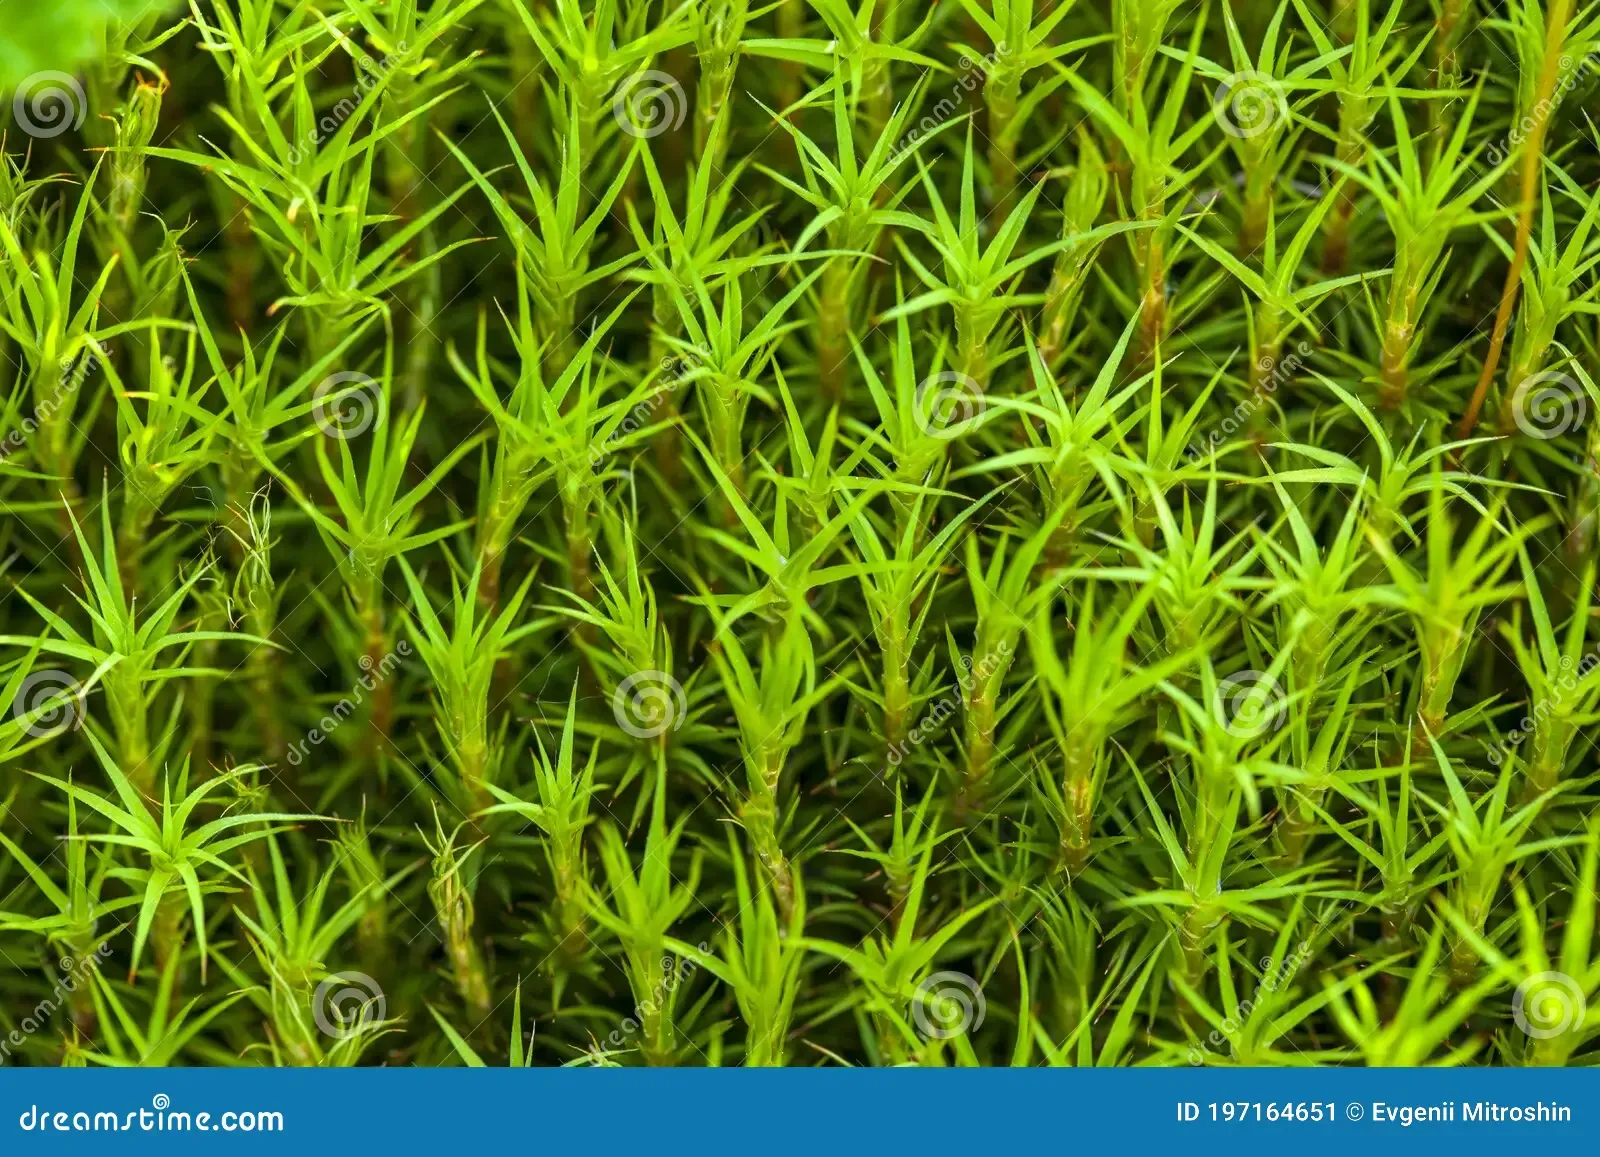 haircap-moss-flowering-macro-polytrichum-commune-hedw-197164651.jpg